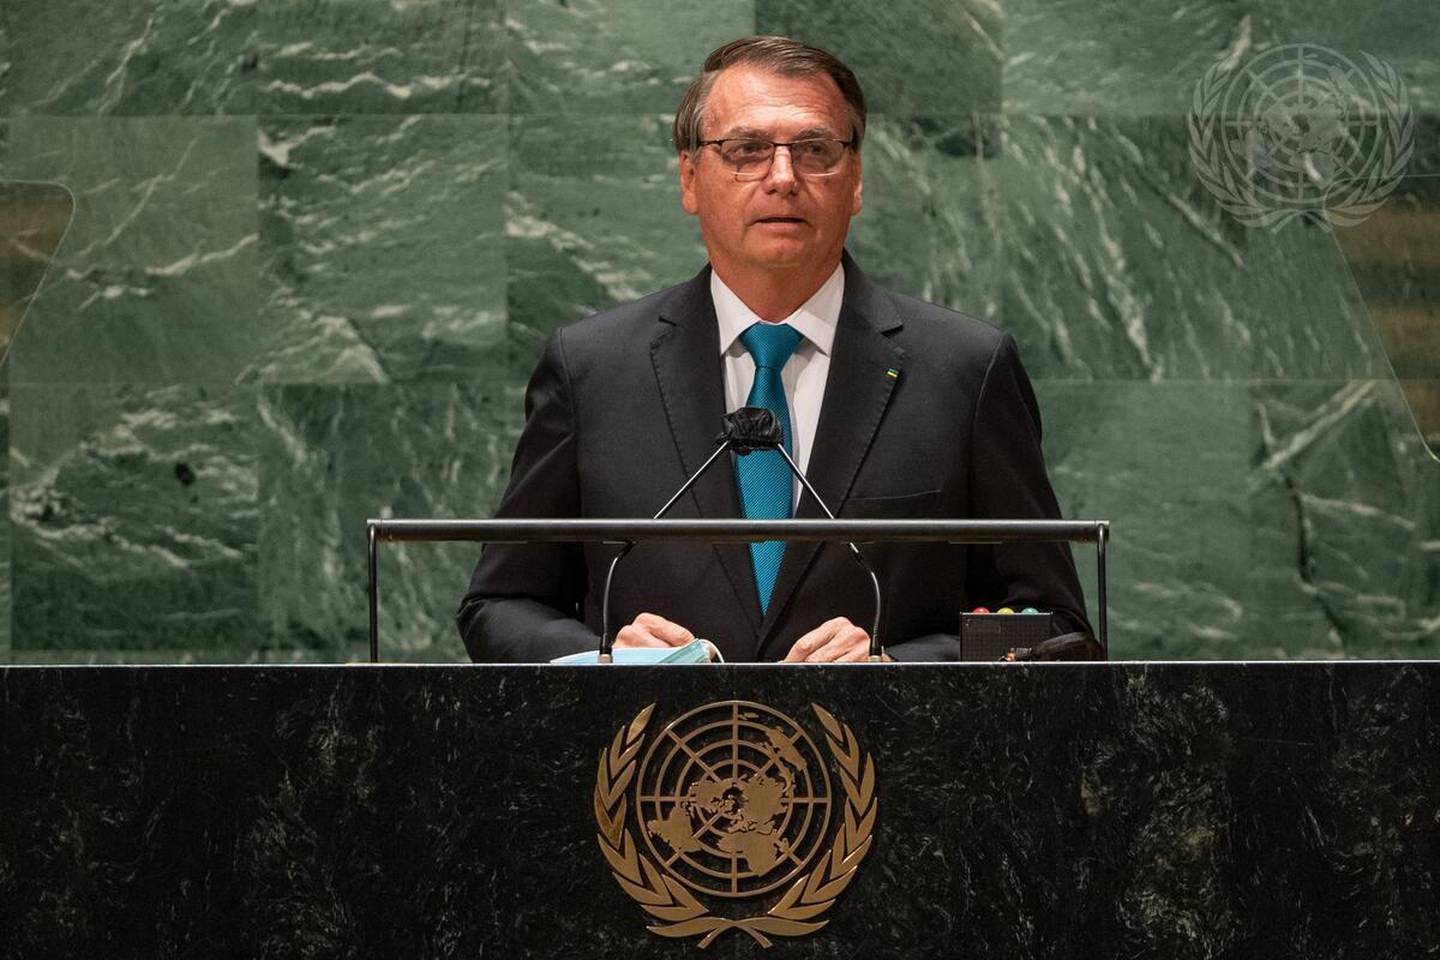 Jair Bolsonaro, presidente de la República Federativa de Brasil, interviene en el debate general del septuagésimo sexto período de sesiones de la Asamblea General. Foto: Naciones Unidas/Cia Pakdfd